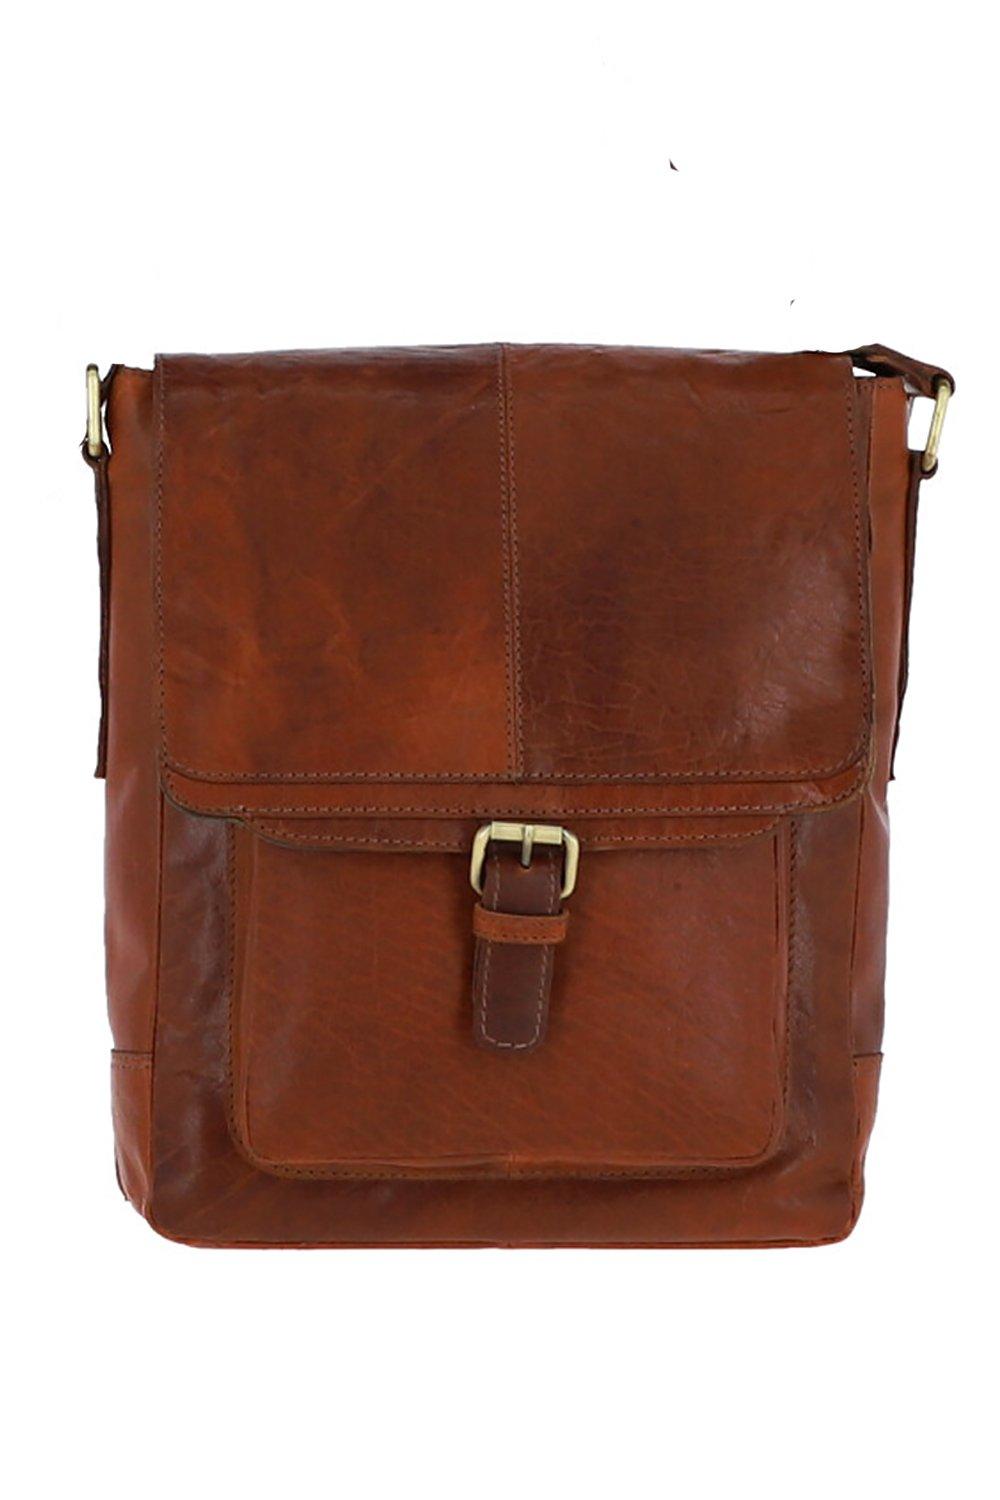 Дорожная сумка из винтажной кожи среднего размера Ashwood Leather, коричневый сумка дорожная шарпей натуральная кожа плечевой ремень черный